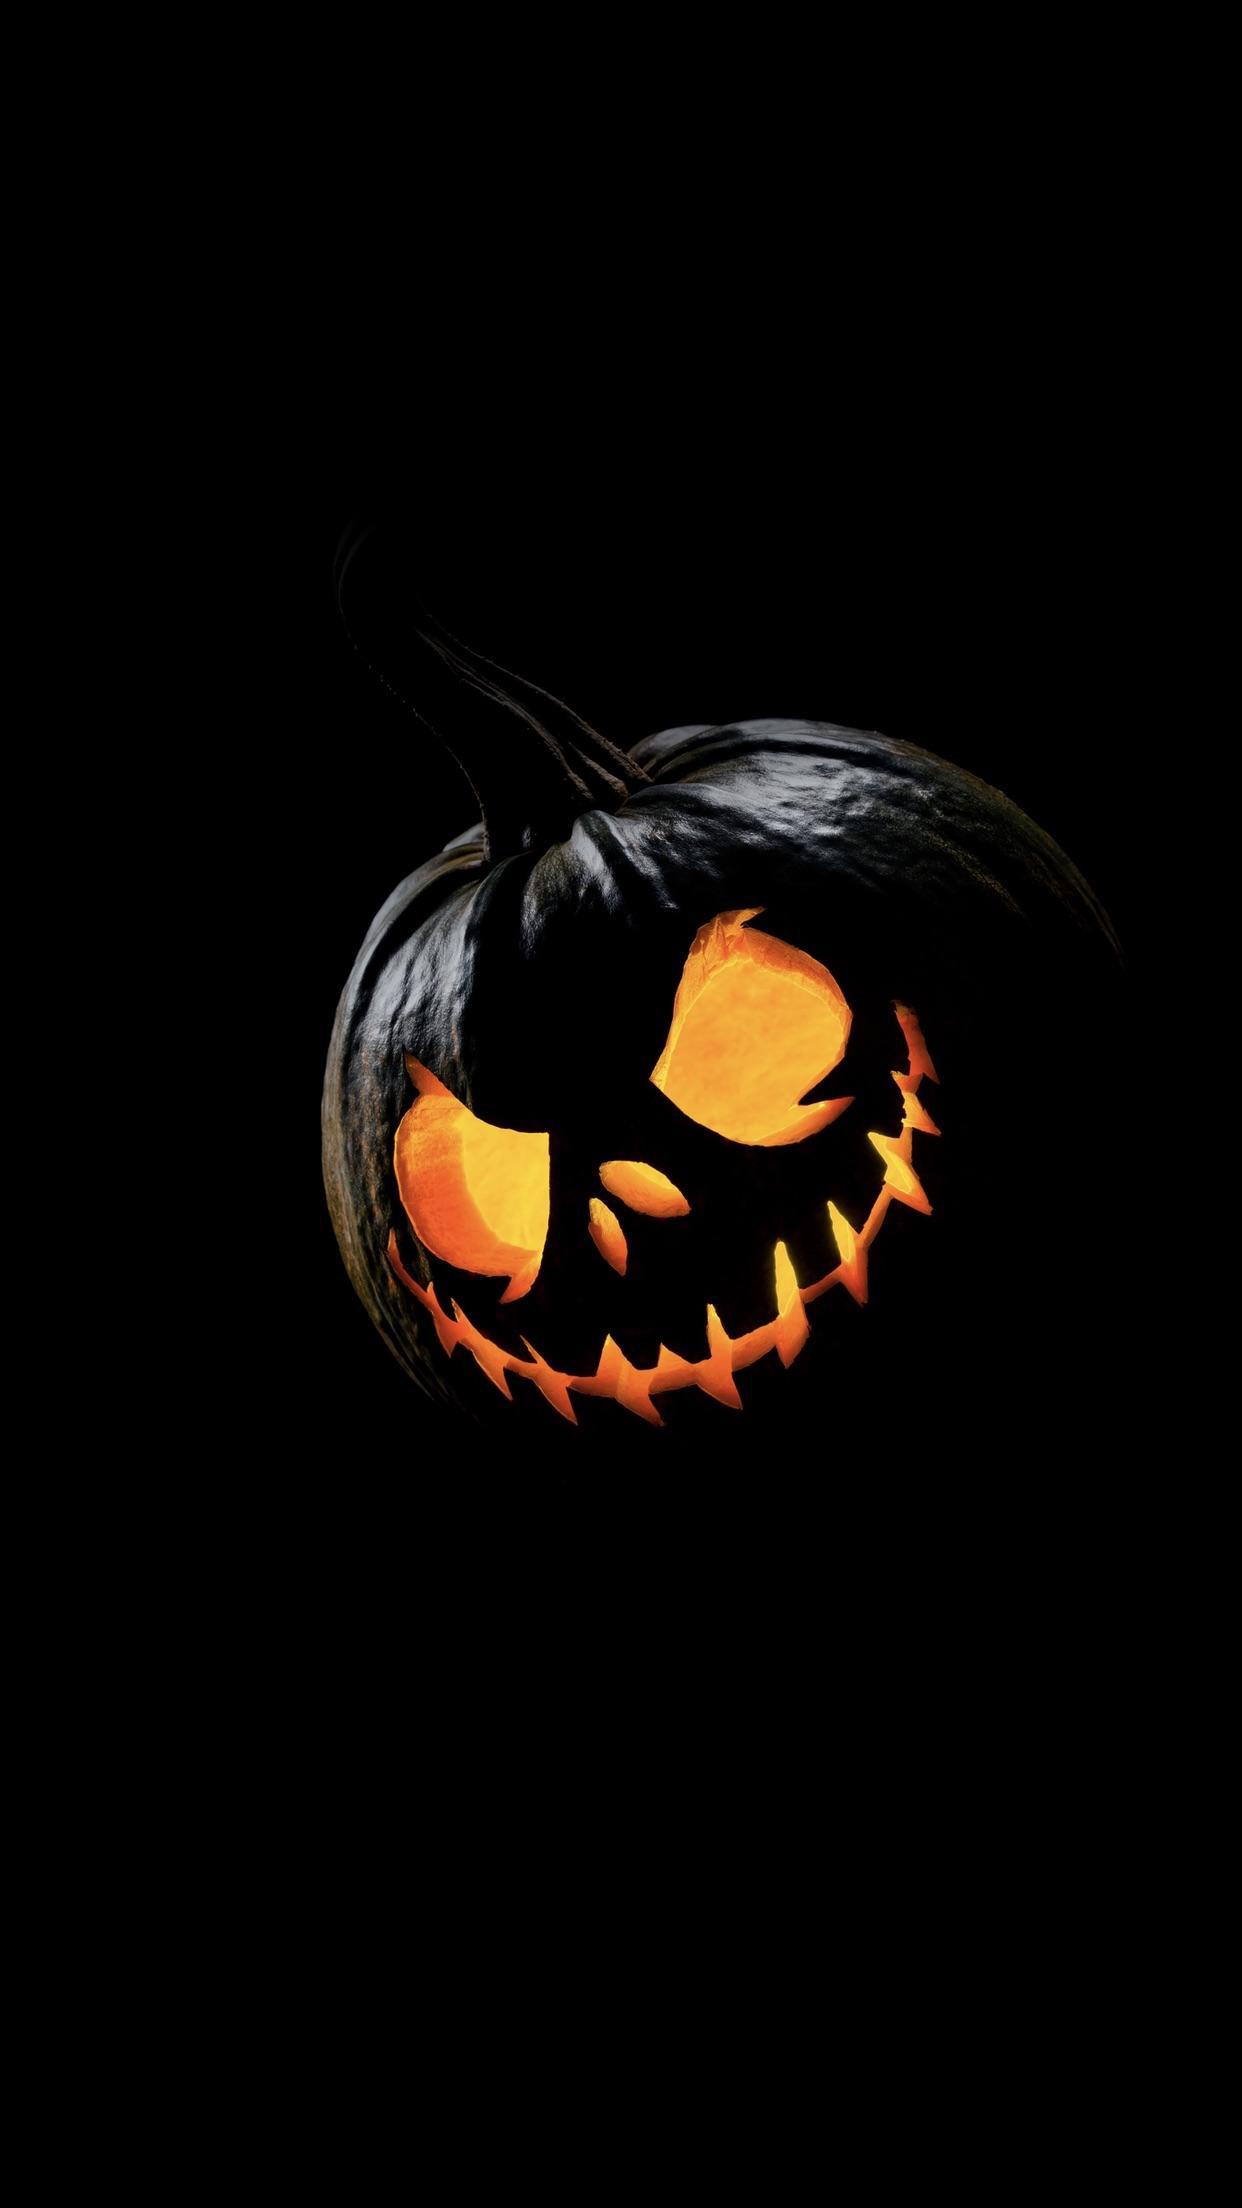 Happy Halloween iPhone HD Wallpaper